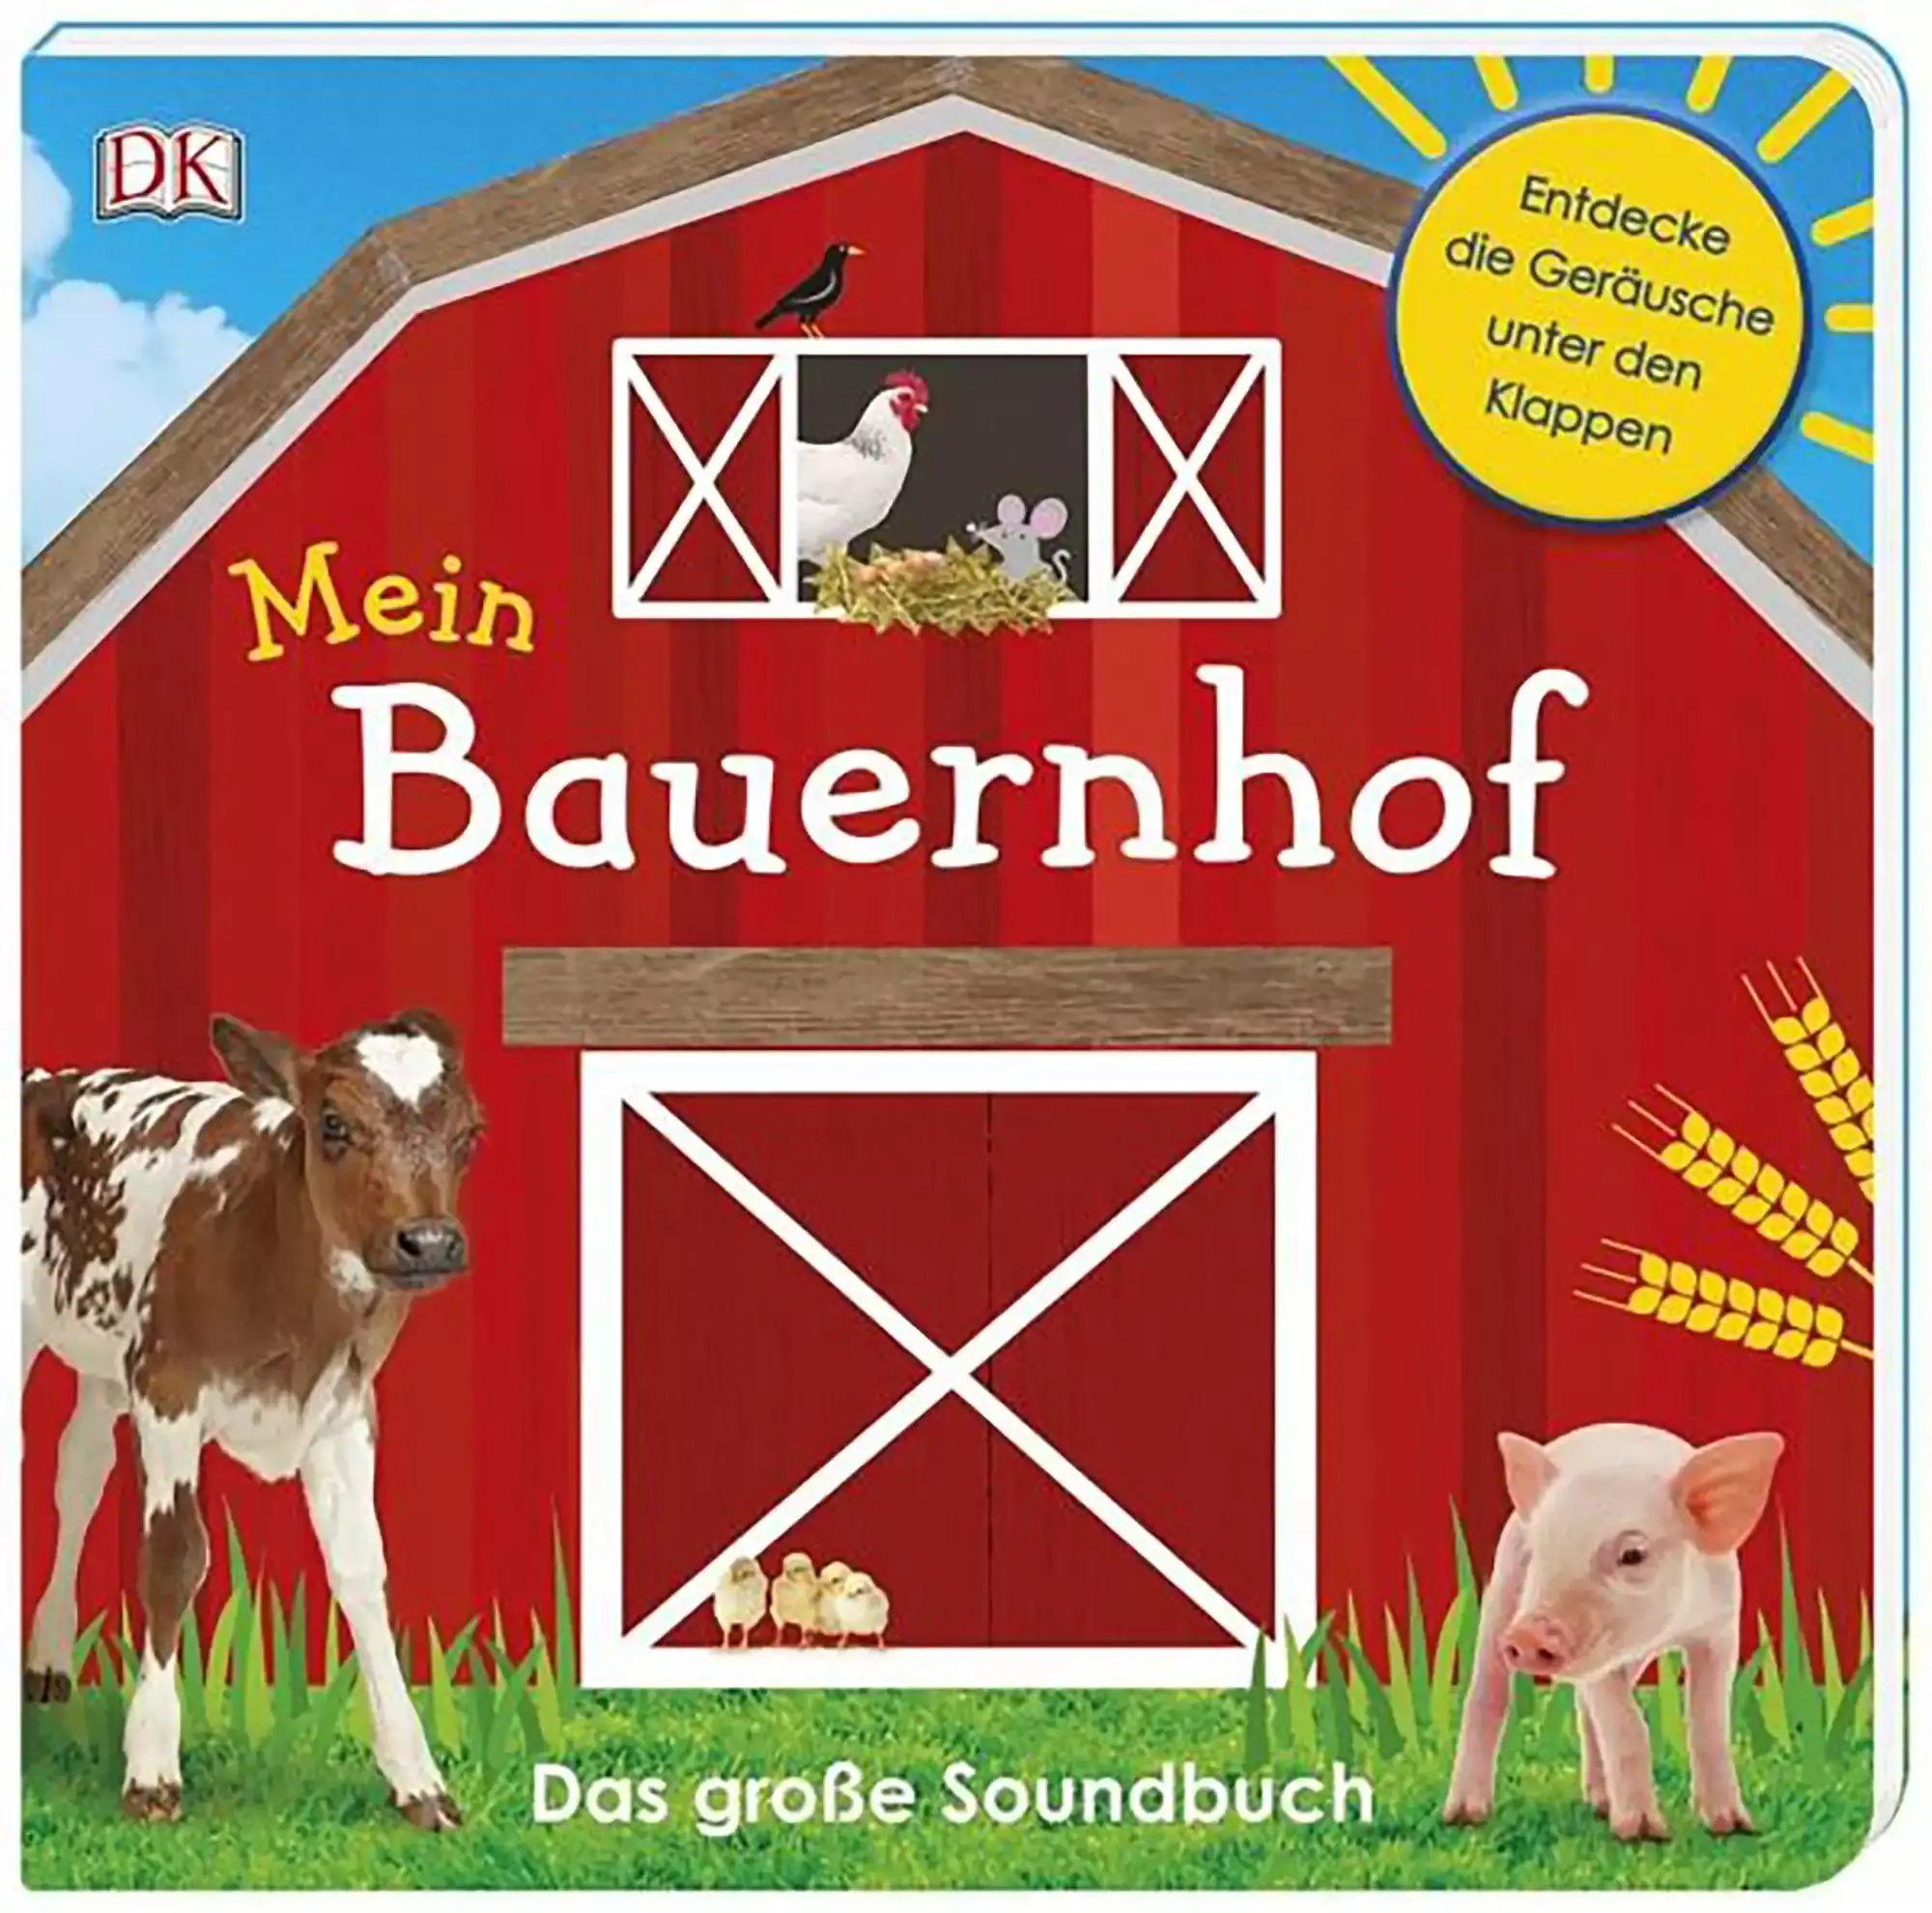 Soundbuch - Mein Bauernhof DK Mehrfarbig 2000577520800 1